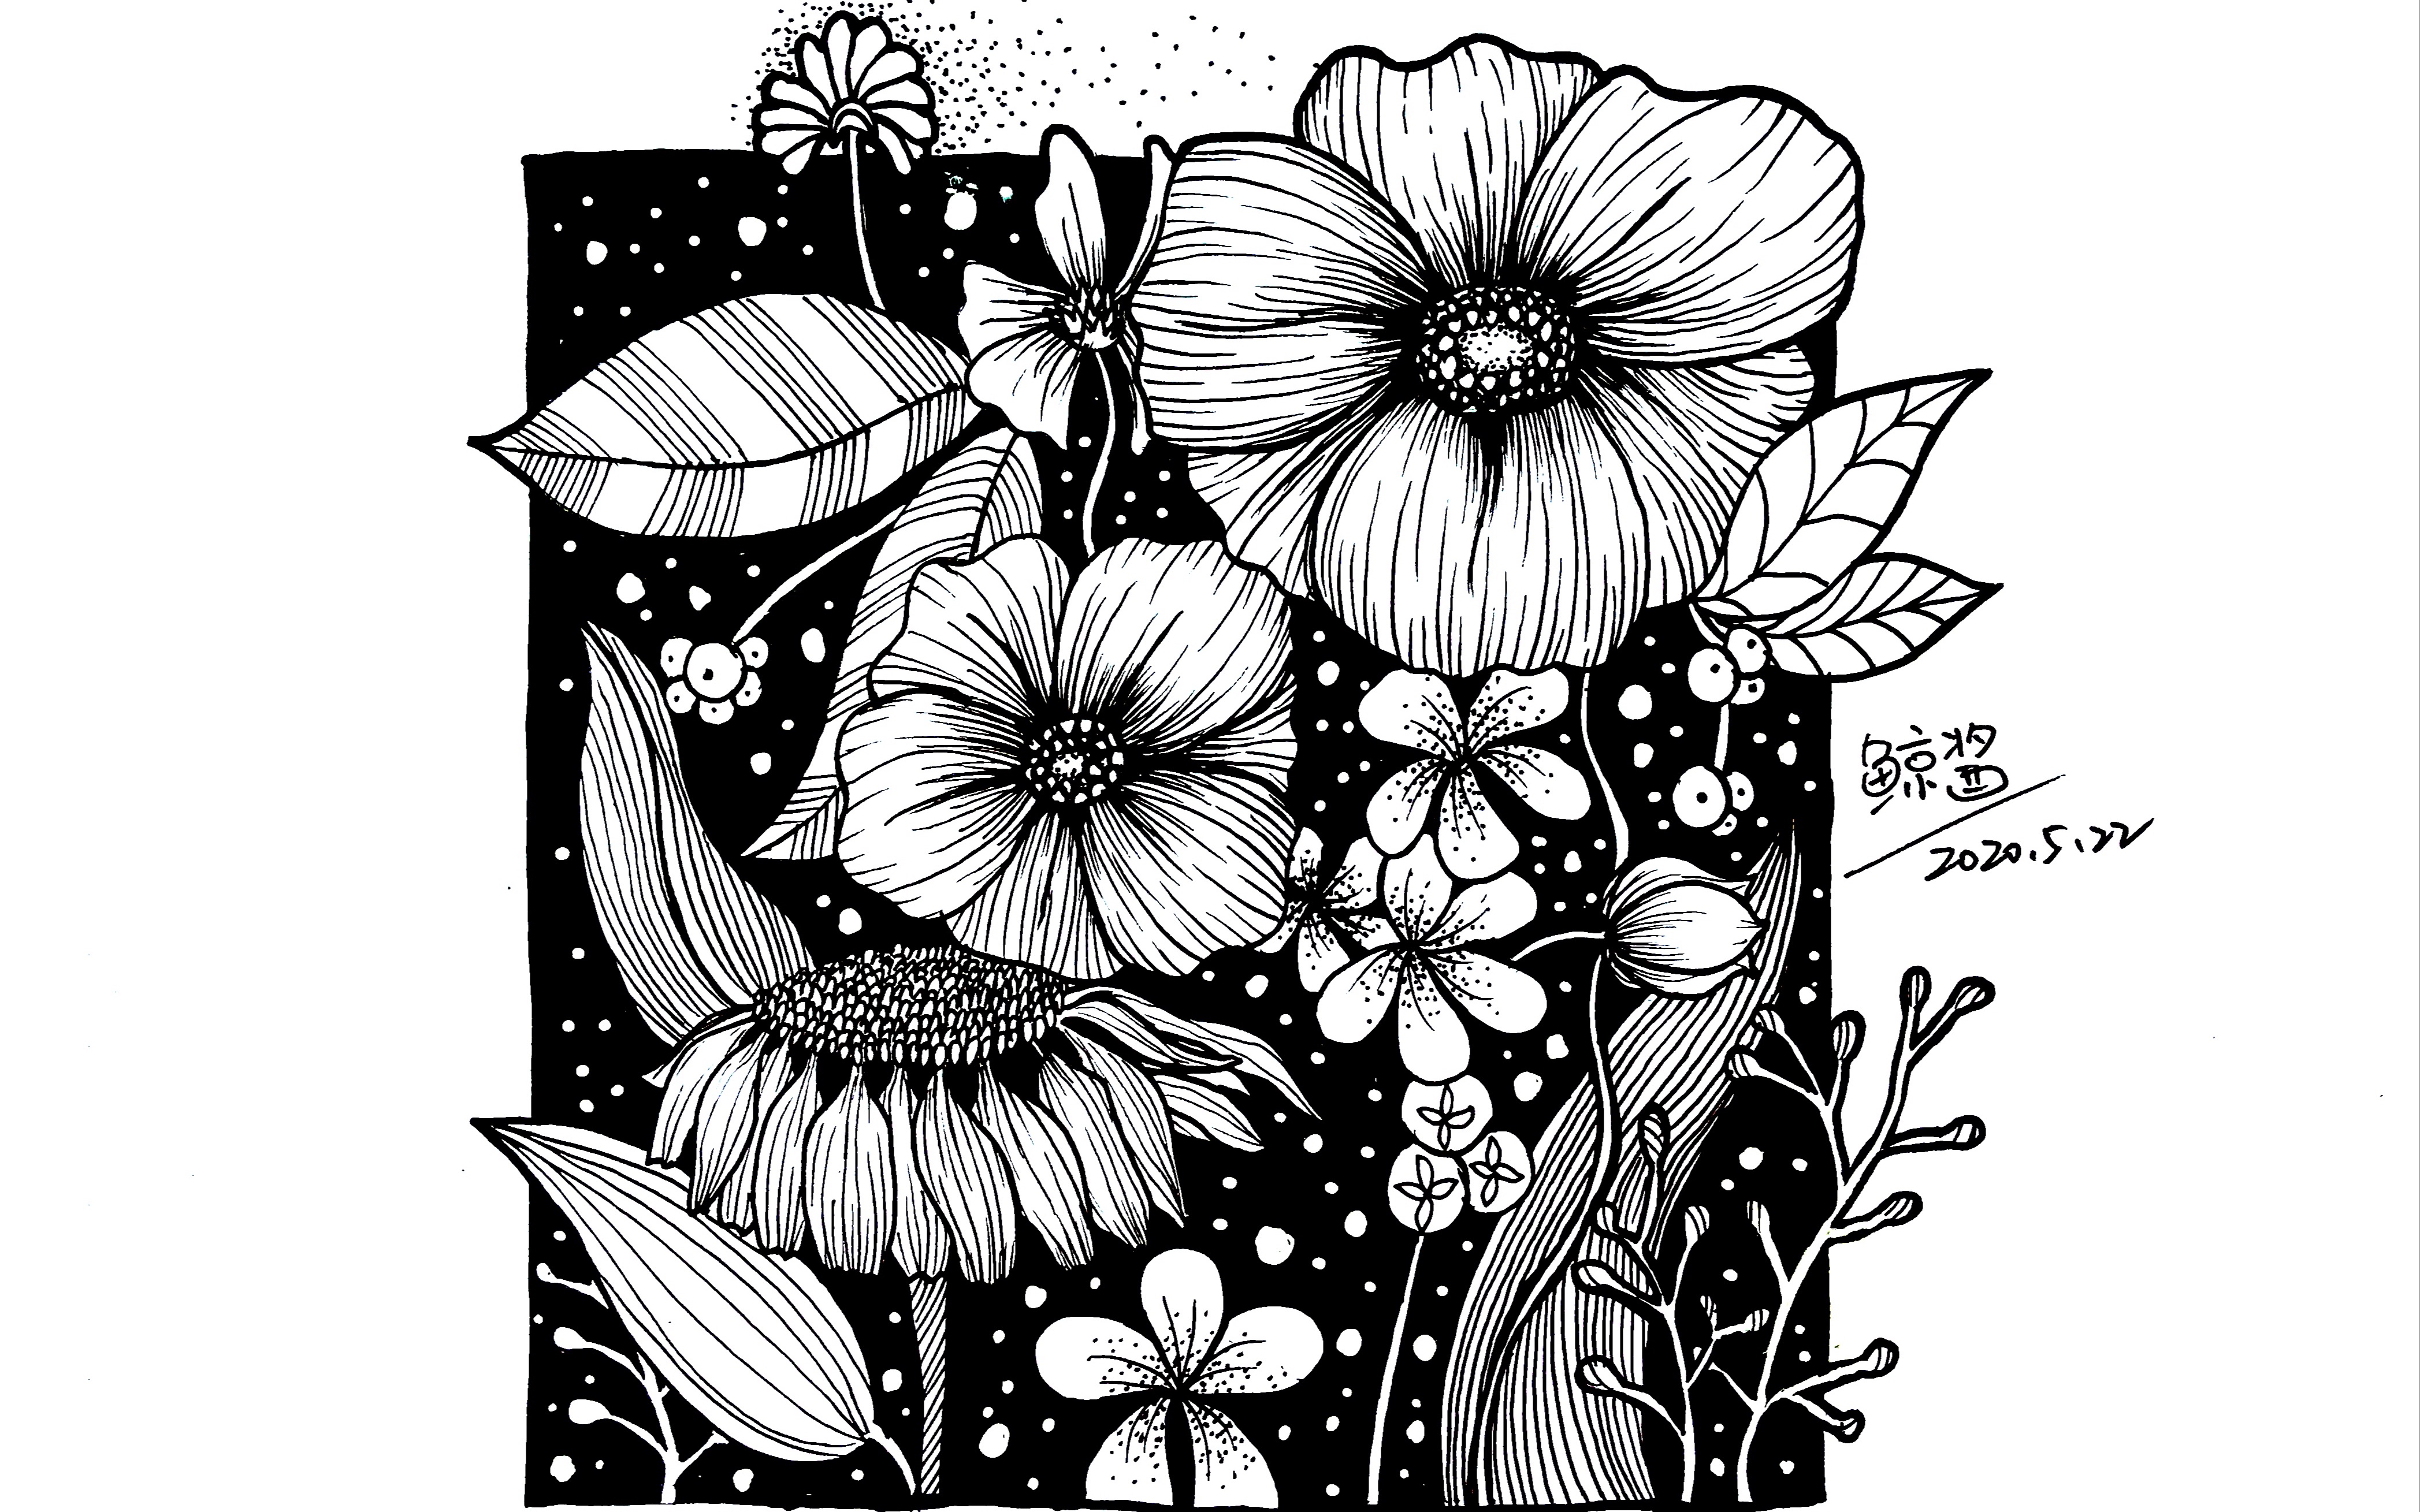 黑白装饰画花卉 黑白装饰画花卉简单